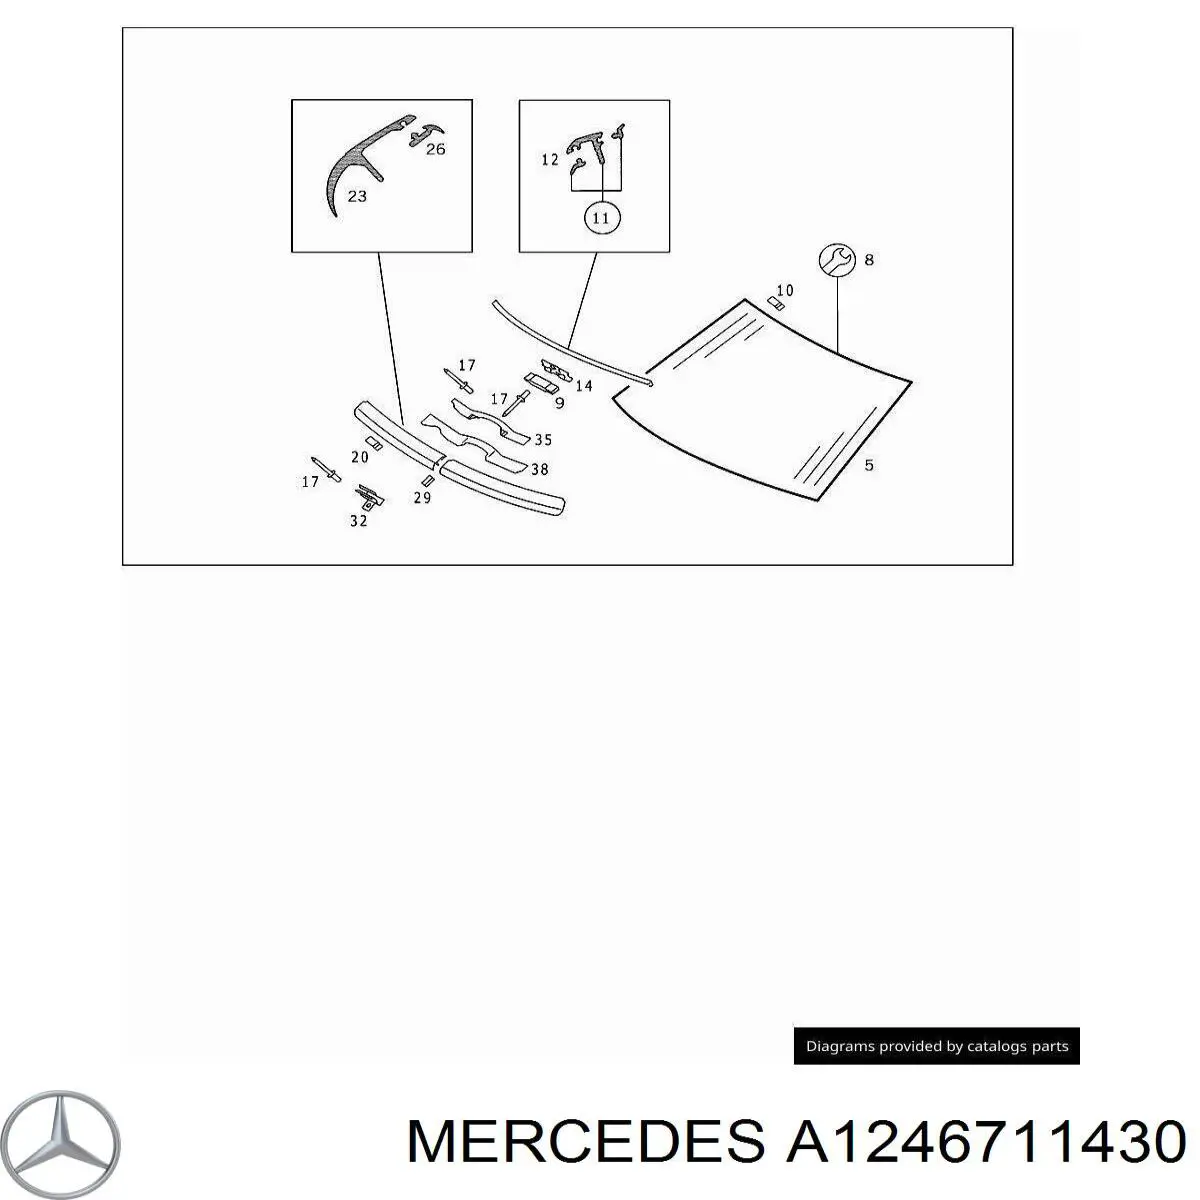 A1246711430 Mercedes moldura de parabrisas inferior